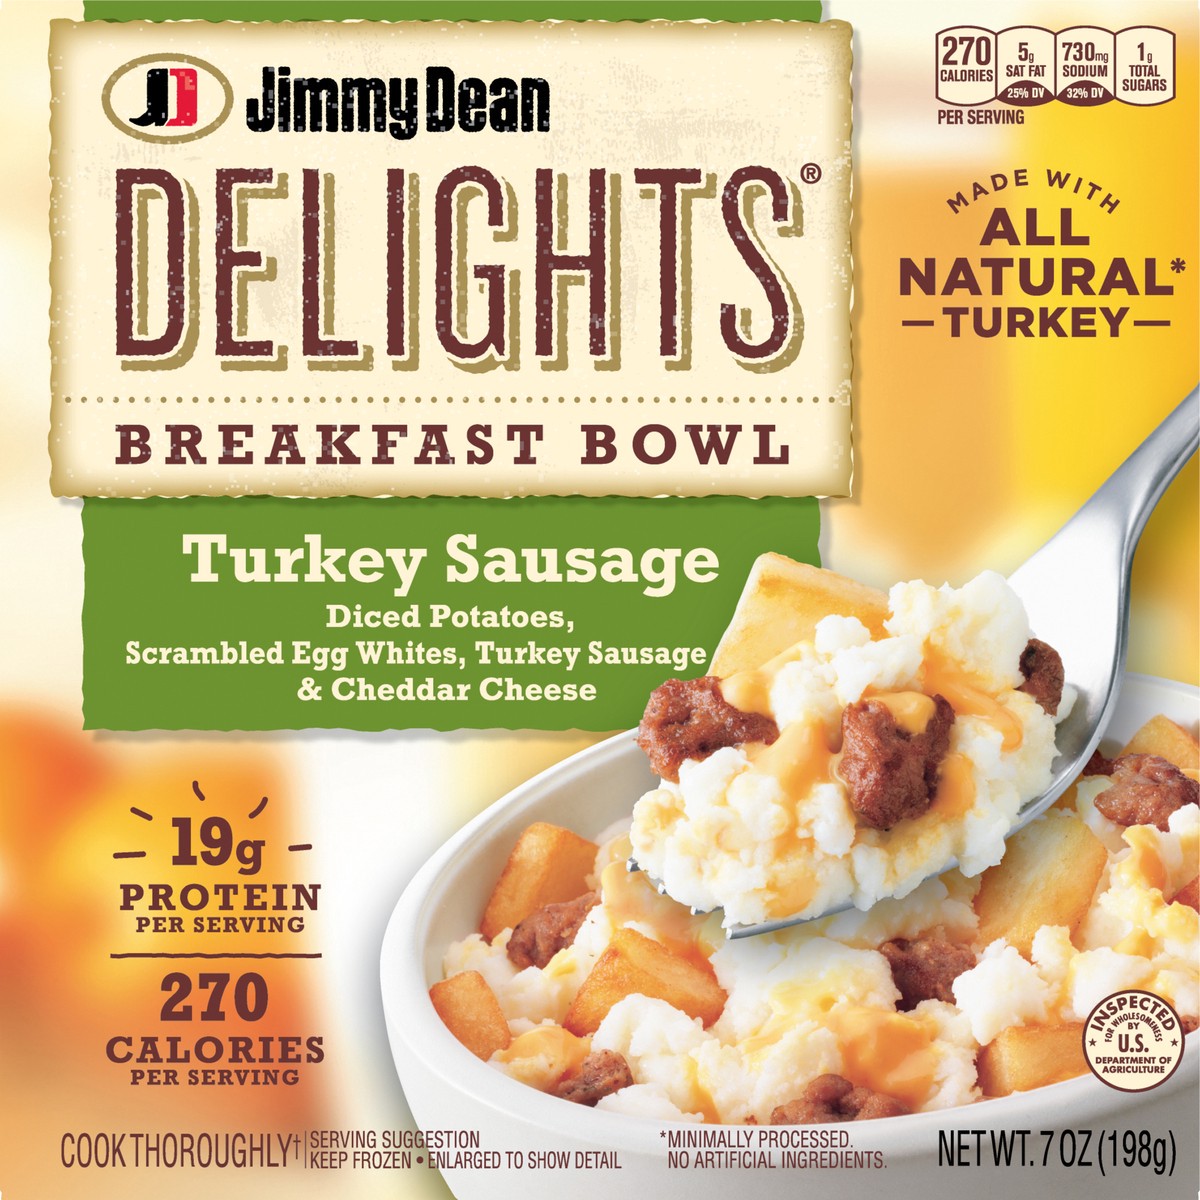 slide 6 of 9, Jimmy Dean Delights Breakfast Bowl, Turkey Sausage, Frozen, 7 oz Bowl, 198.45 g